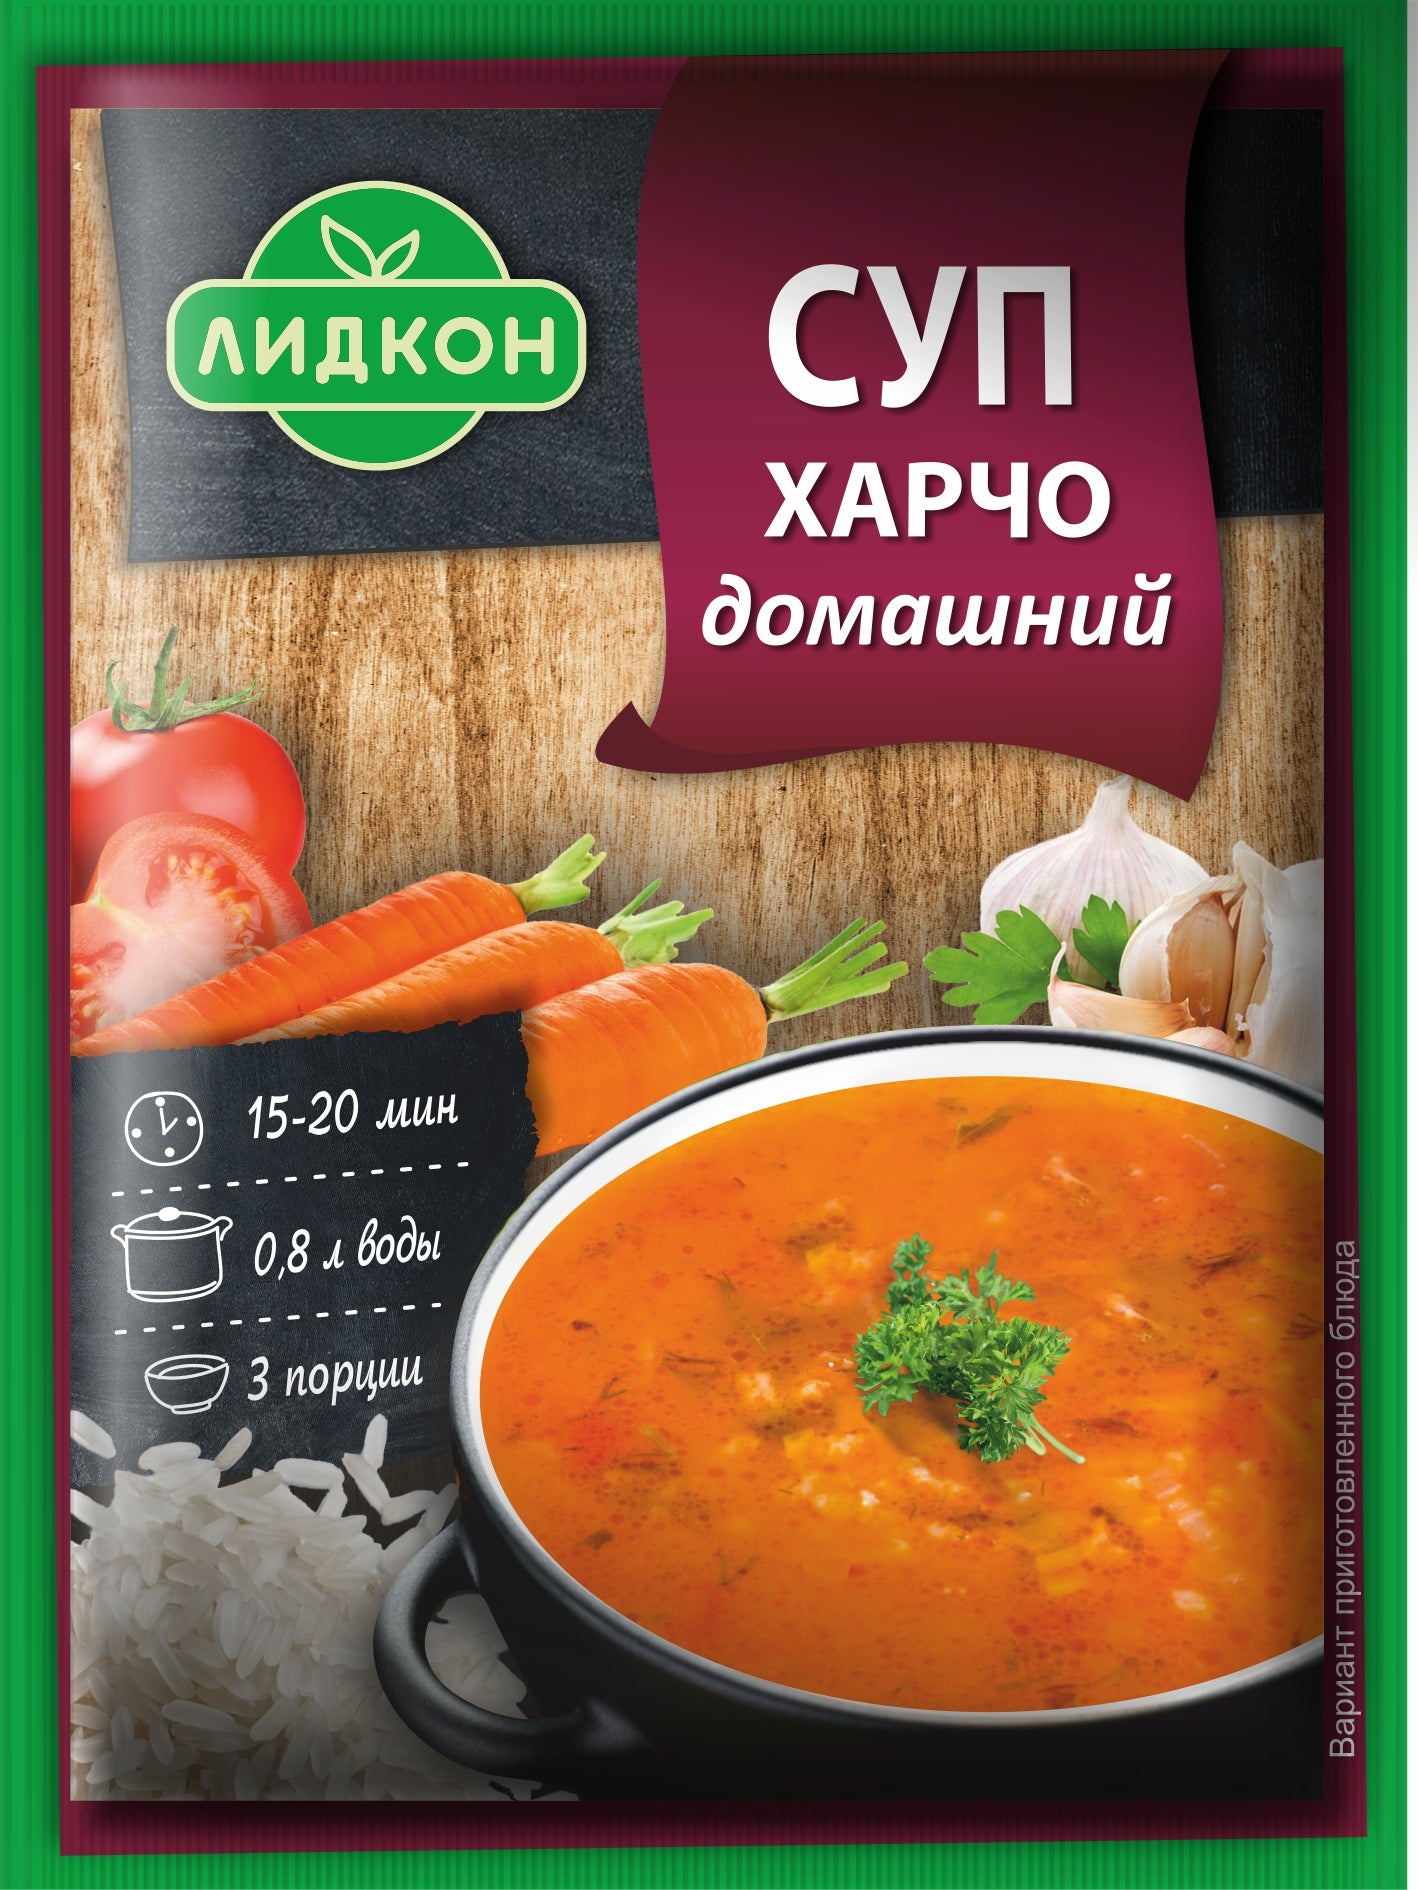 Homemade kharcho soup